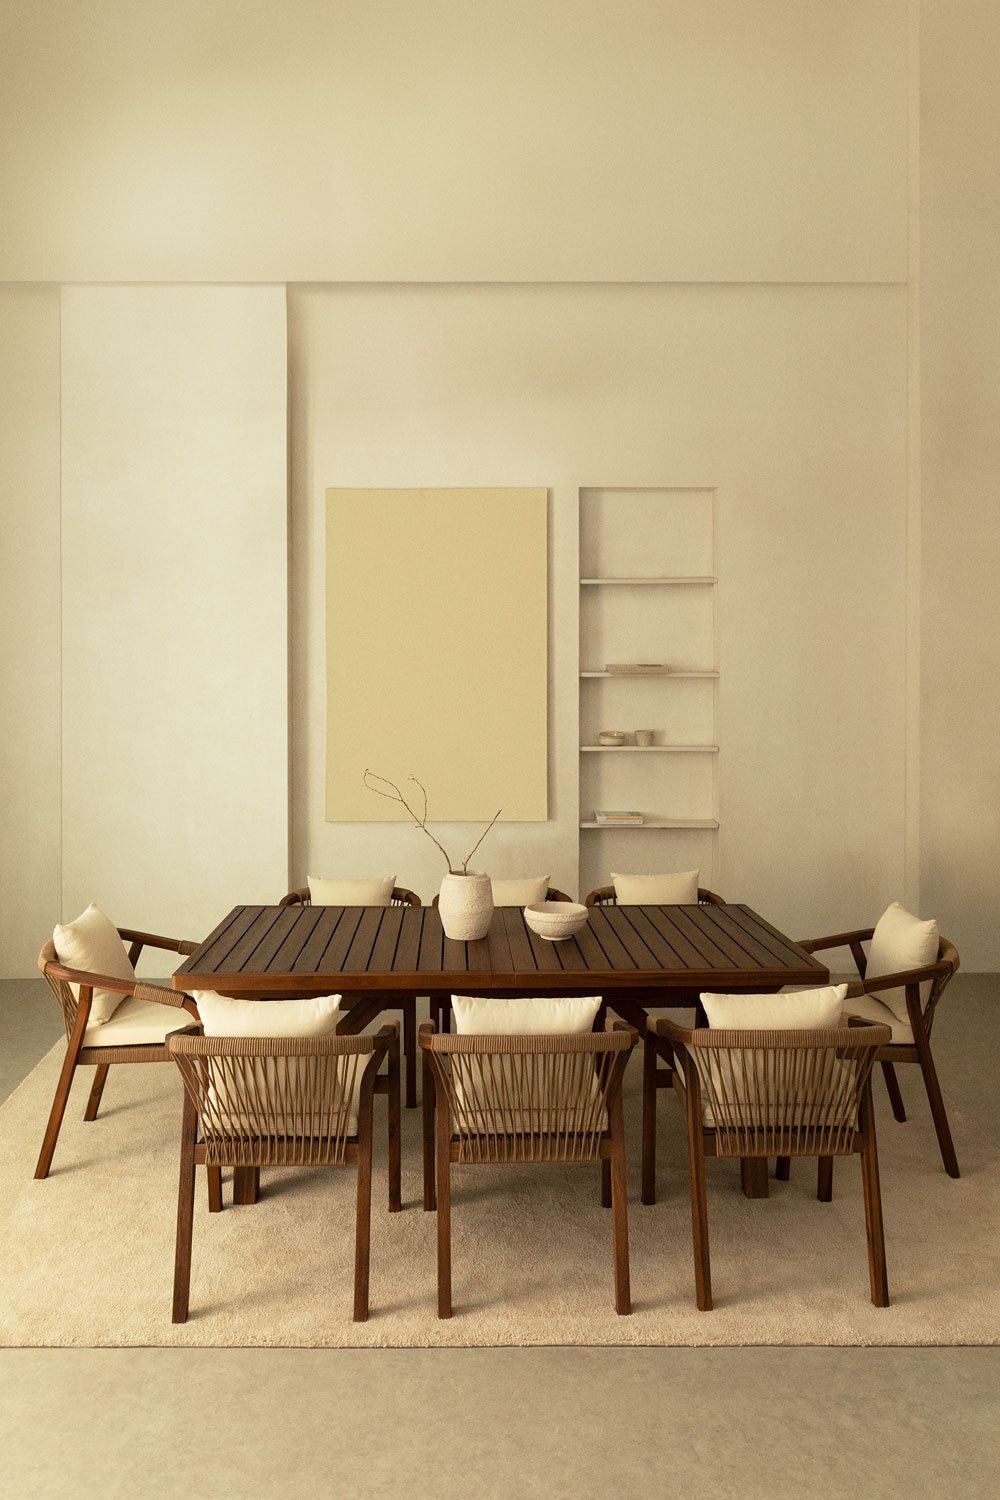 Rechthoekige uitschuifbare tafelset (200-300x100 cm) en 8 eetkamerstoelen met armleuningen in Dubai acaciahout , galerij beeld 1